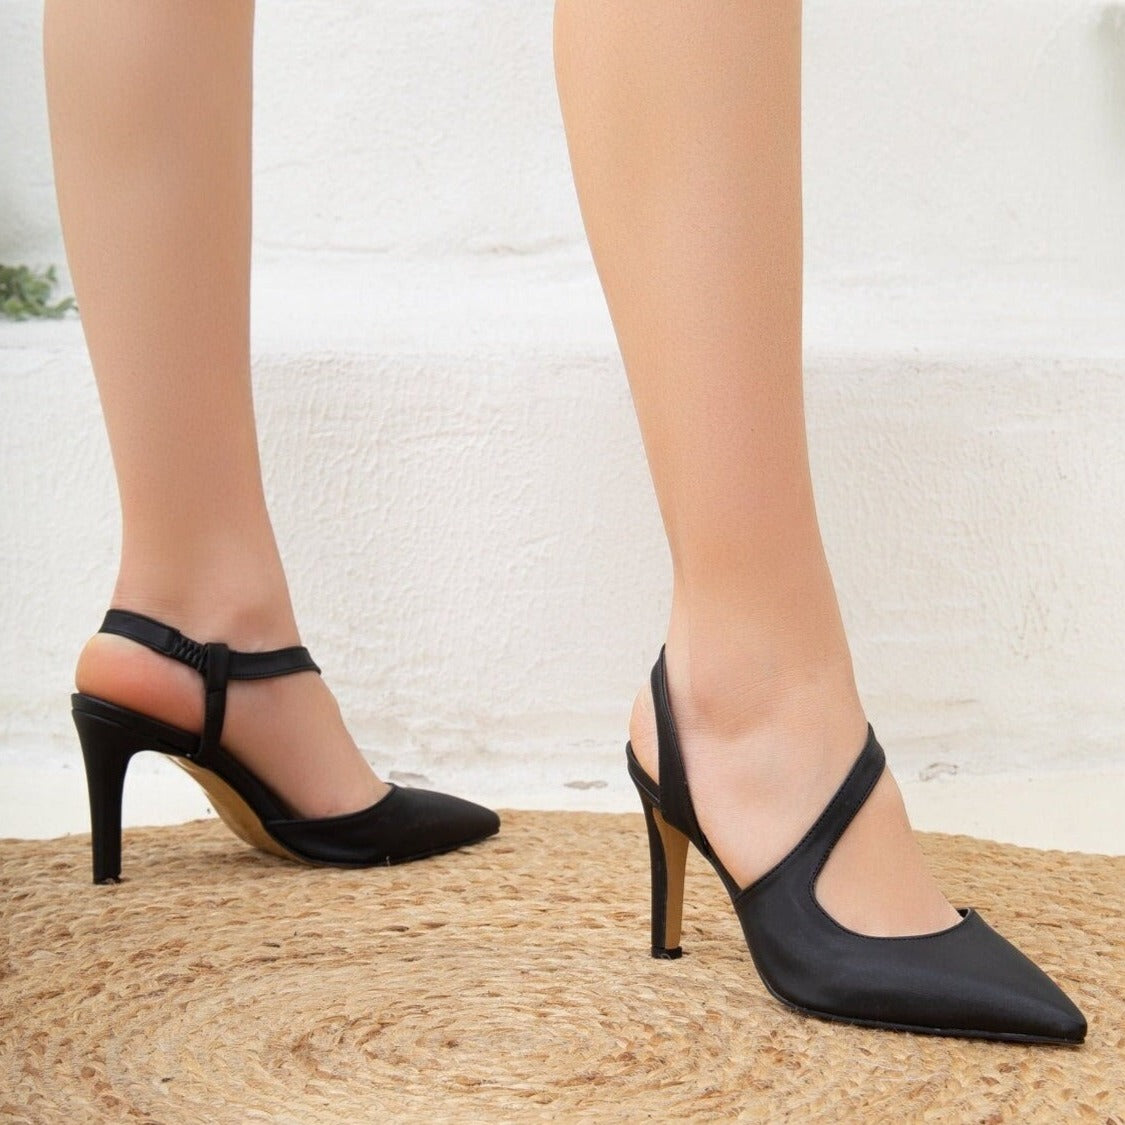 Taryn Rose Heels Women's 9.5, Tess Black Pointed Toe Formal Business Dress  Shoe | eBay